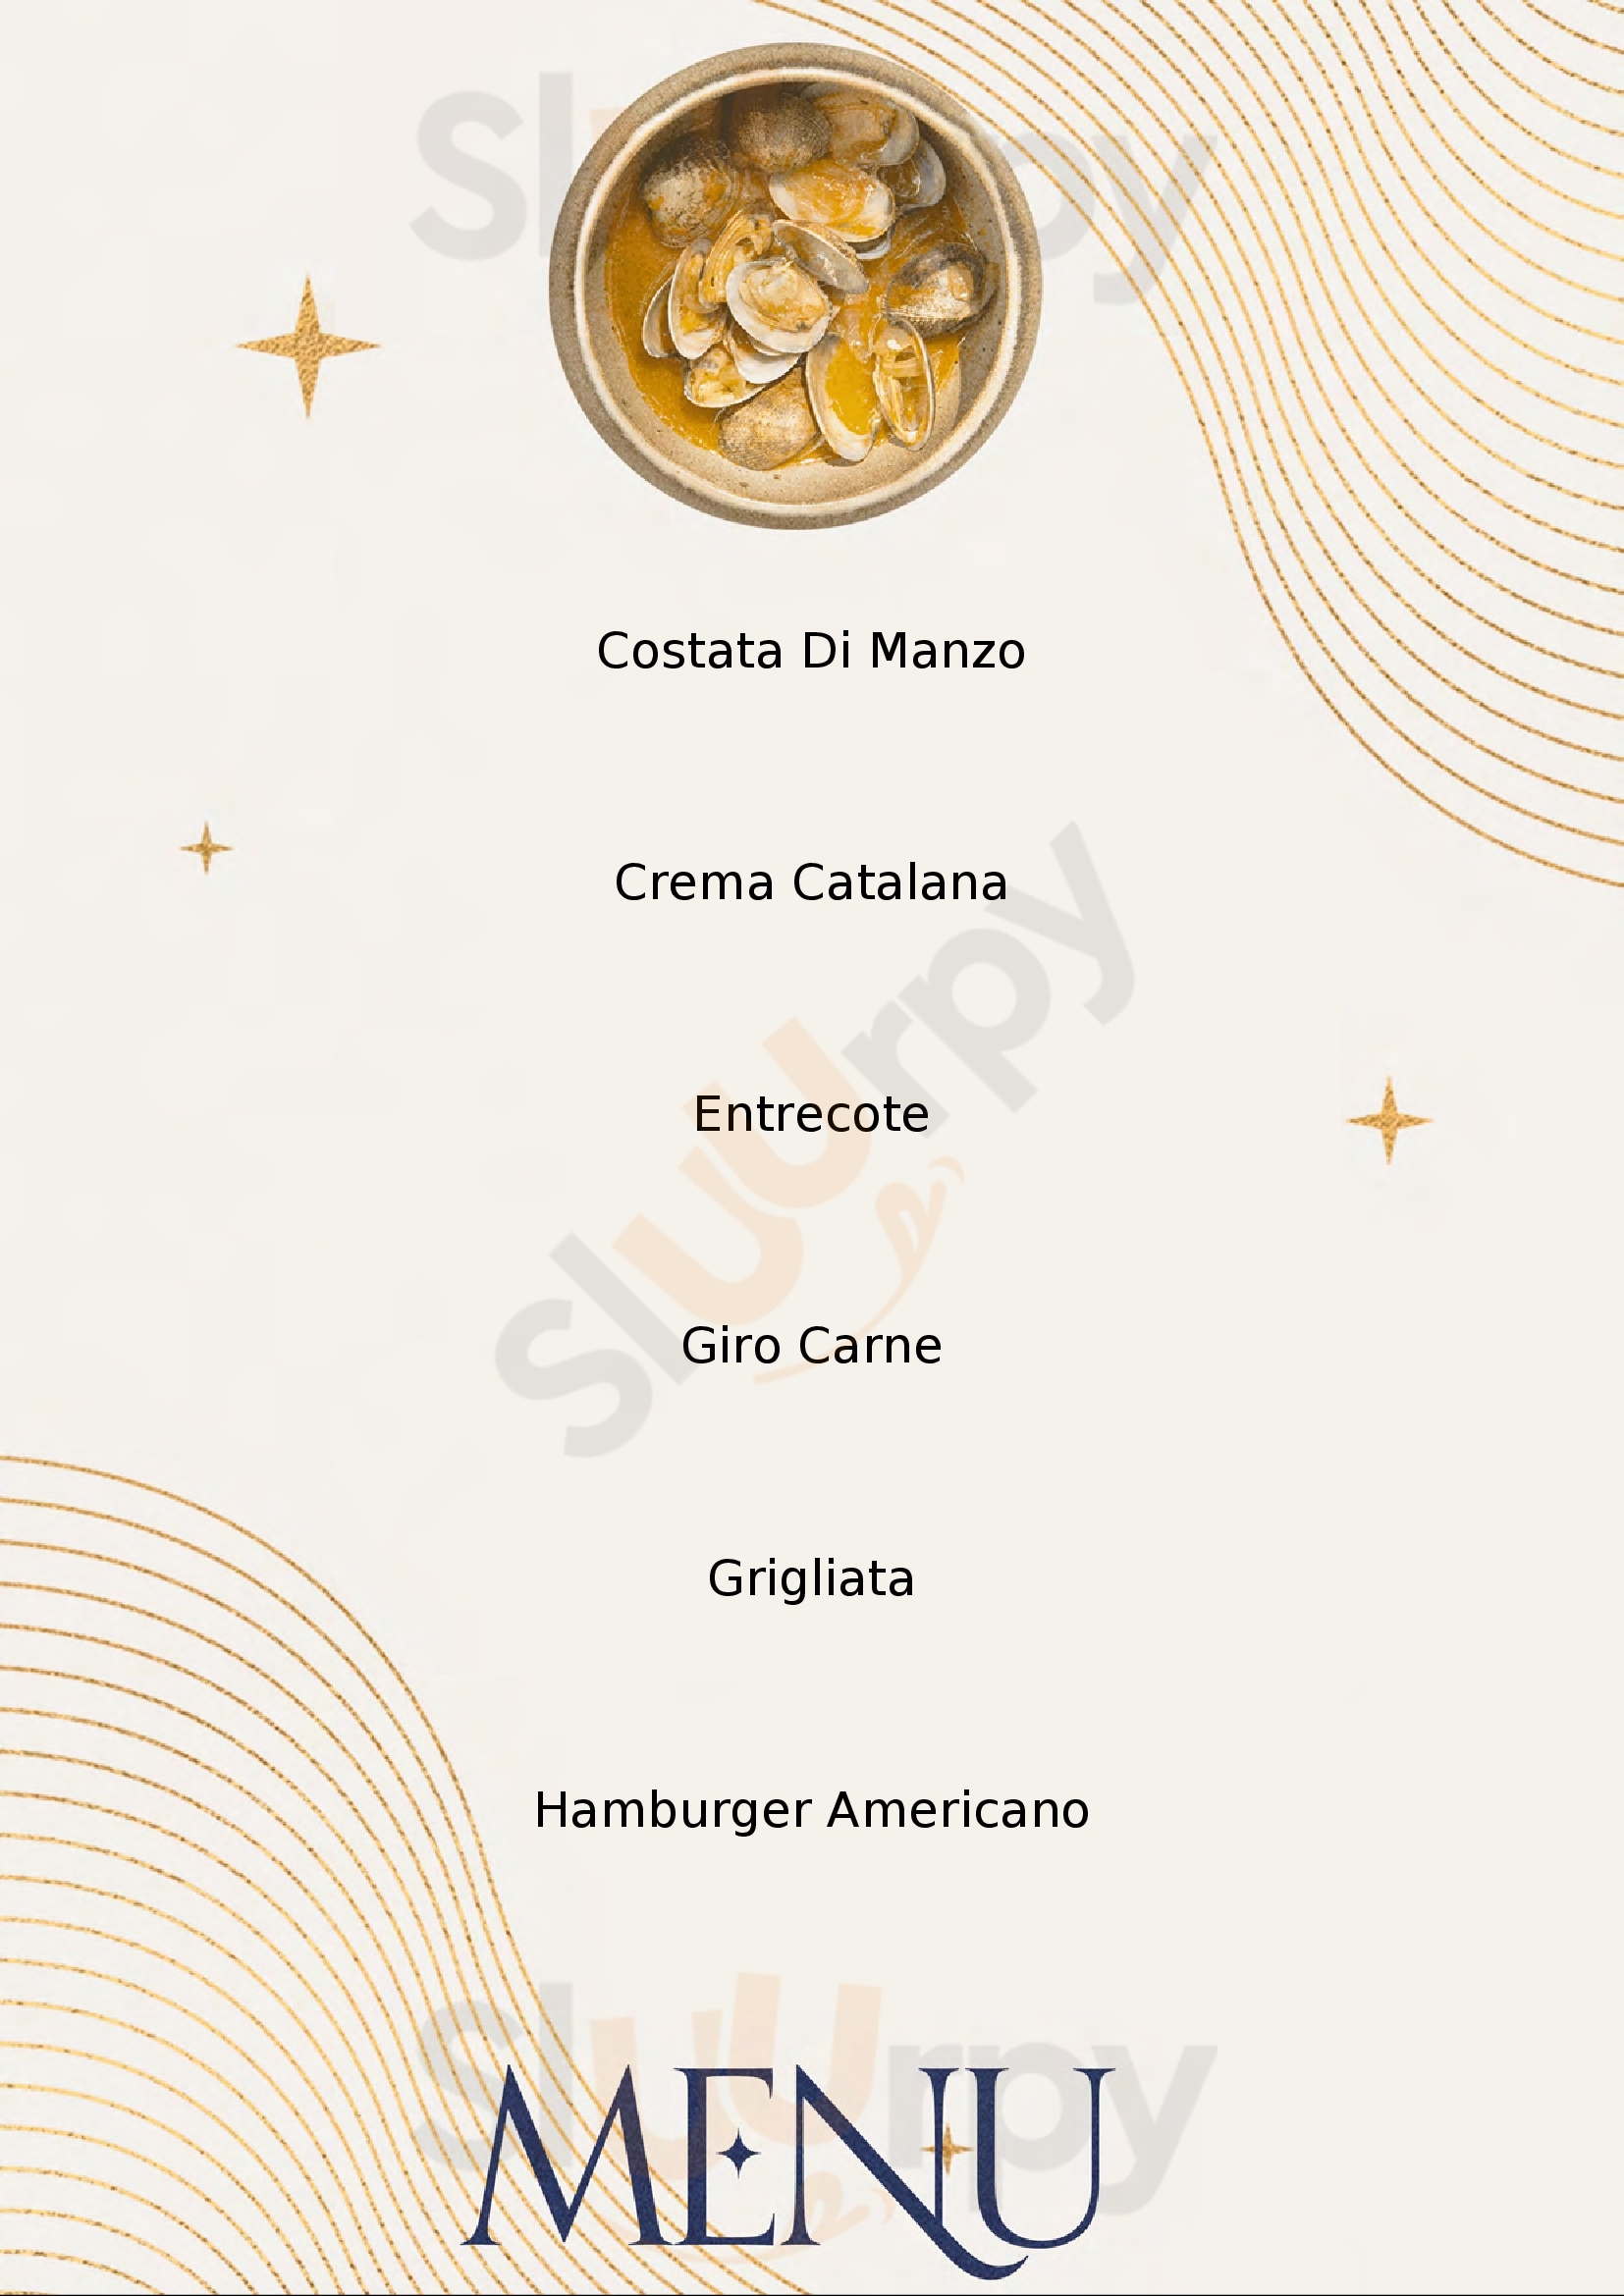 Carnicero Restaurant Cerro Maggiore menù 1 pagina